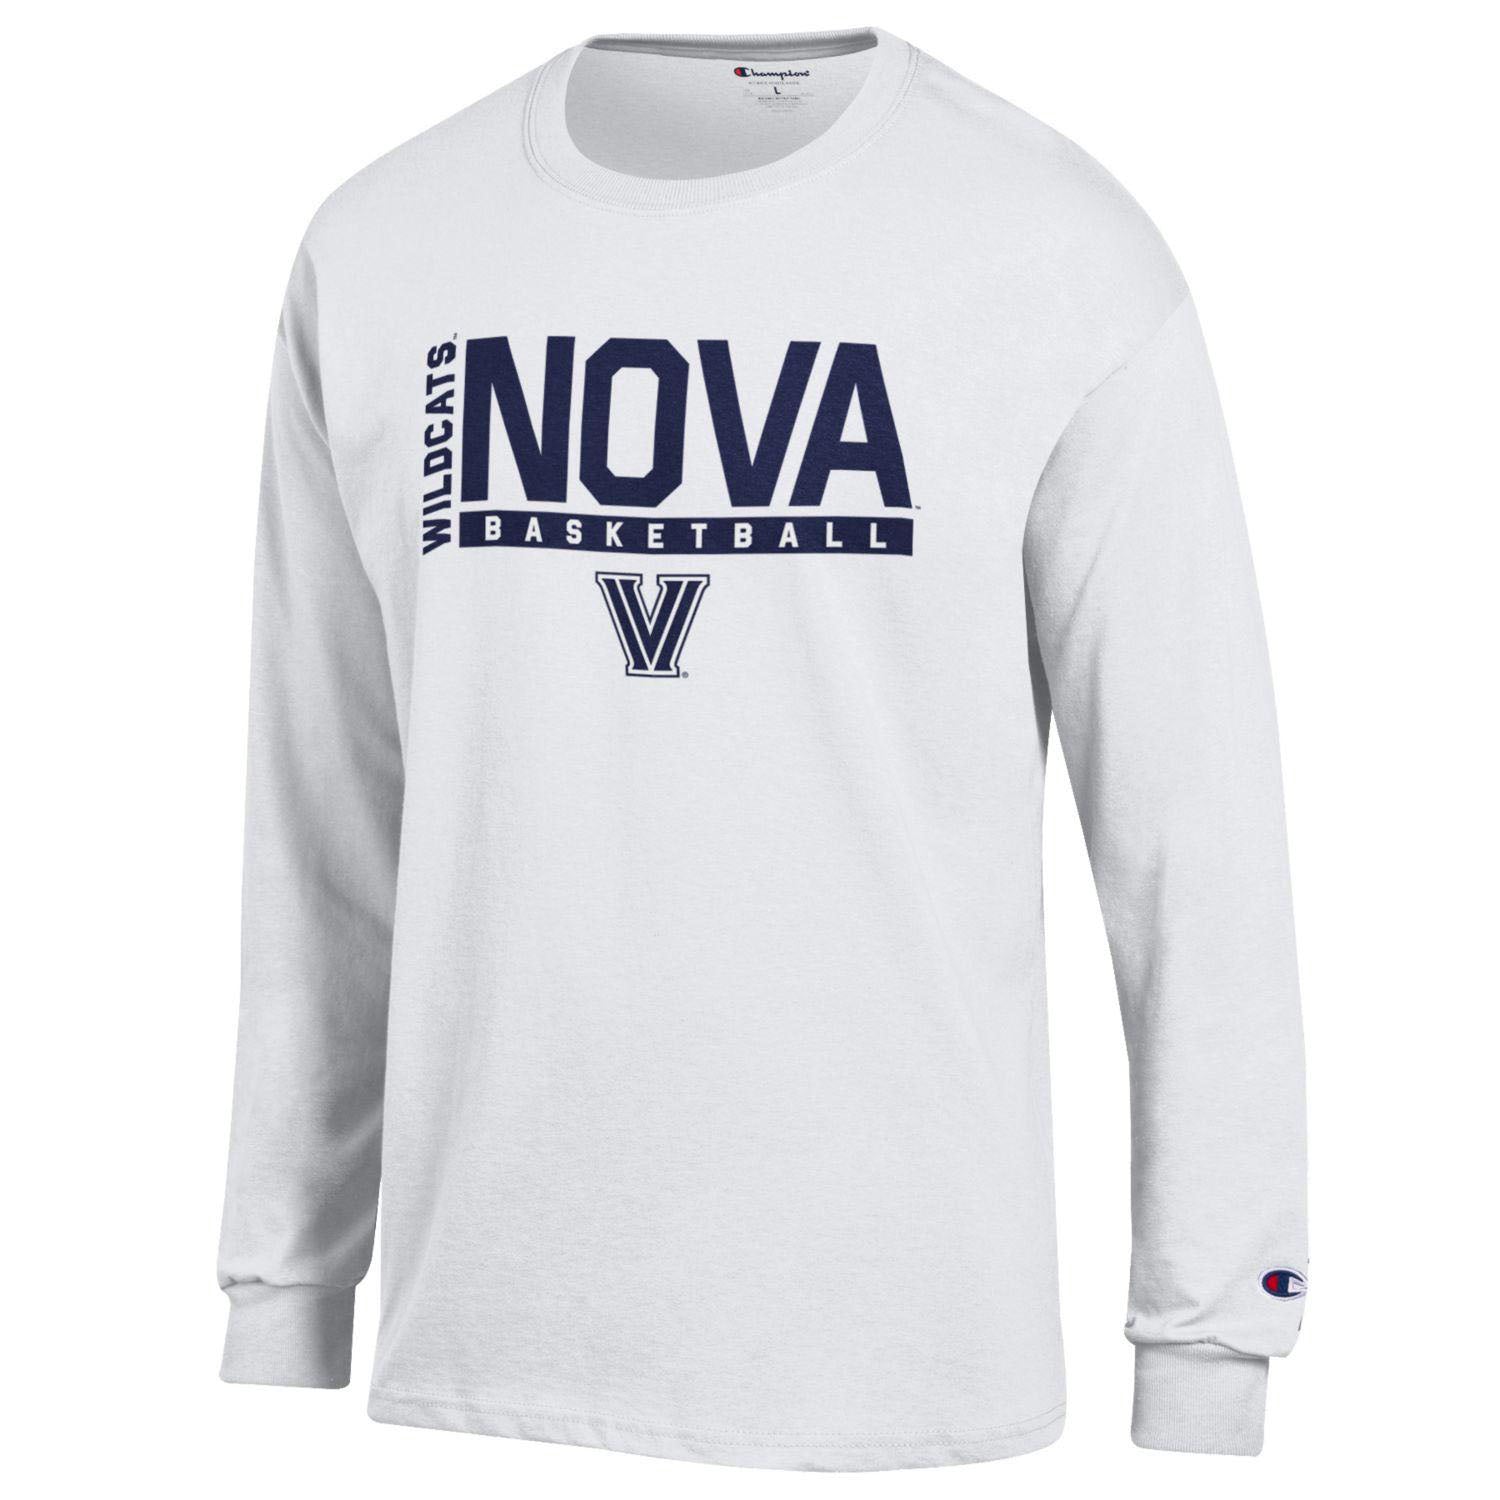 Wildcats Official | Villanova Online Basketball T-Shirt Sleeve Whiteout Villanova Store Long